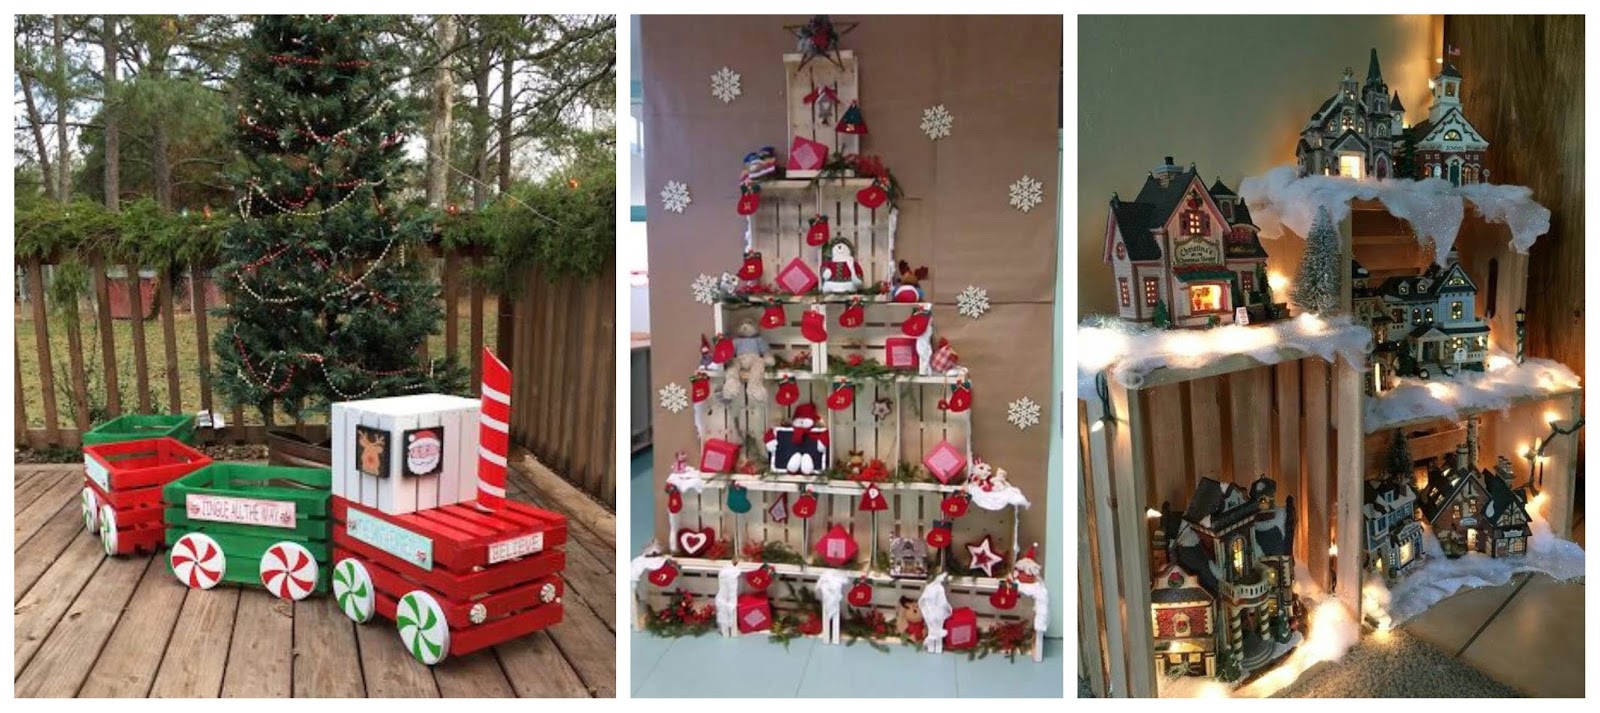 2 manualidades para Navidad con cajas de frutas y tubos de cartón